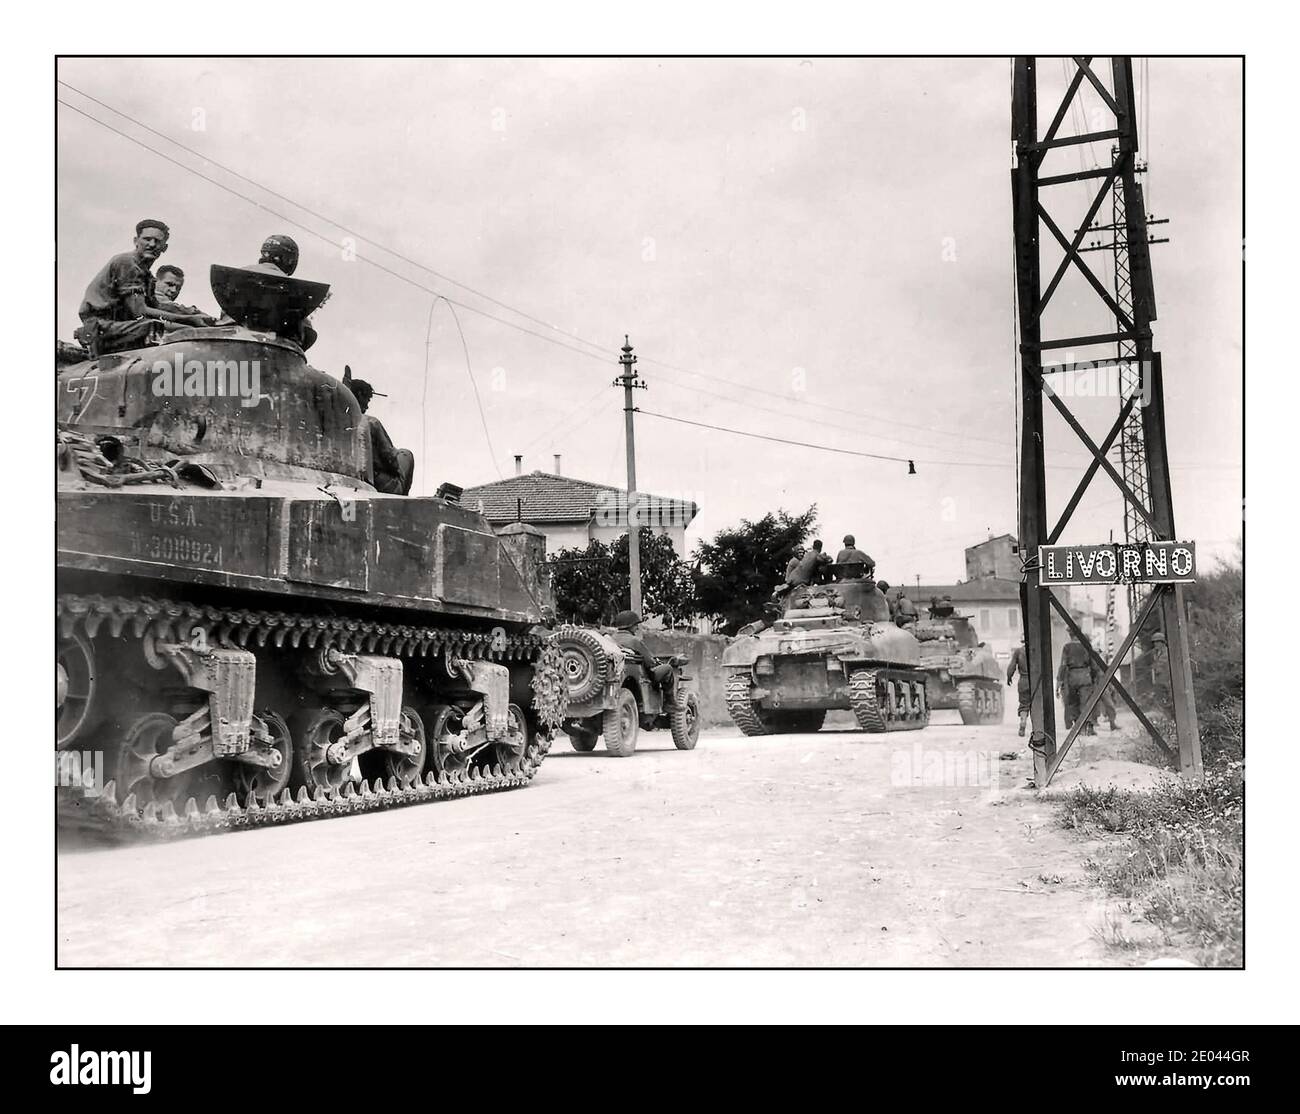 LIVOURNE WW2 Anzio 34e Division d'infanterie. M4 Sherman chars et Jeep entrant à Livourne Italie 1944 Seconde Guerre mondiale Seconde Guerre mondiale la bataille d'Anzio était une bataille de la campagne italienne de la Seconde Guerre mondiale qui a eu lieu du 22 janvier 1944 (à commencer par le débarquement amphibie allié connu sous le nom d'opération Shingle) au 5 juin, 1944 (se terminant par la capture de Rome). L'opération a été contrée sans succès par les forces allemandes dans la région d'Anzio et de Nettuno. Banque D'Images